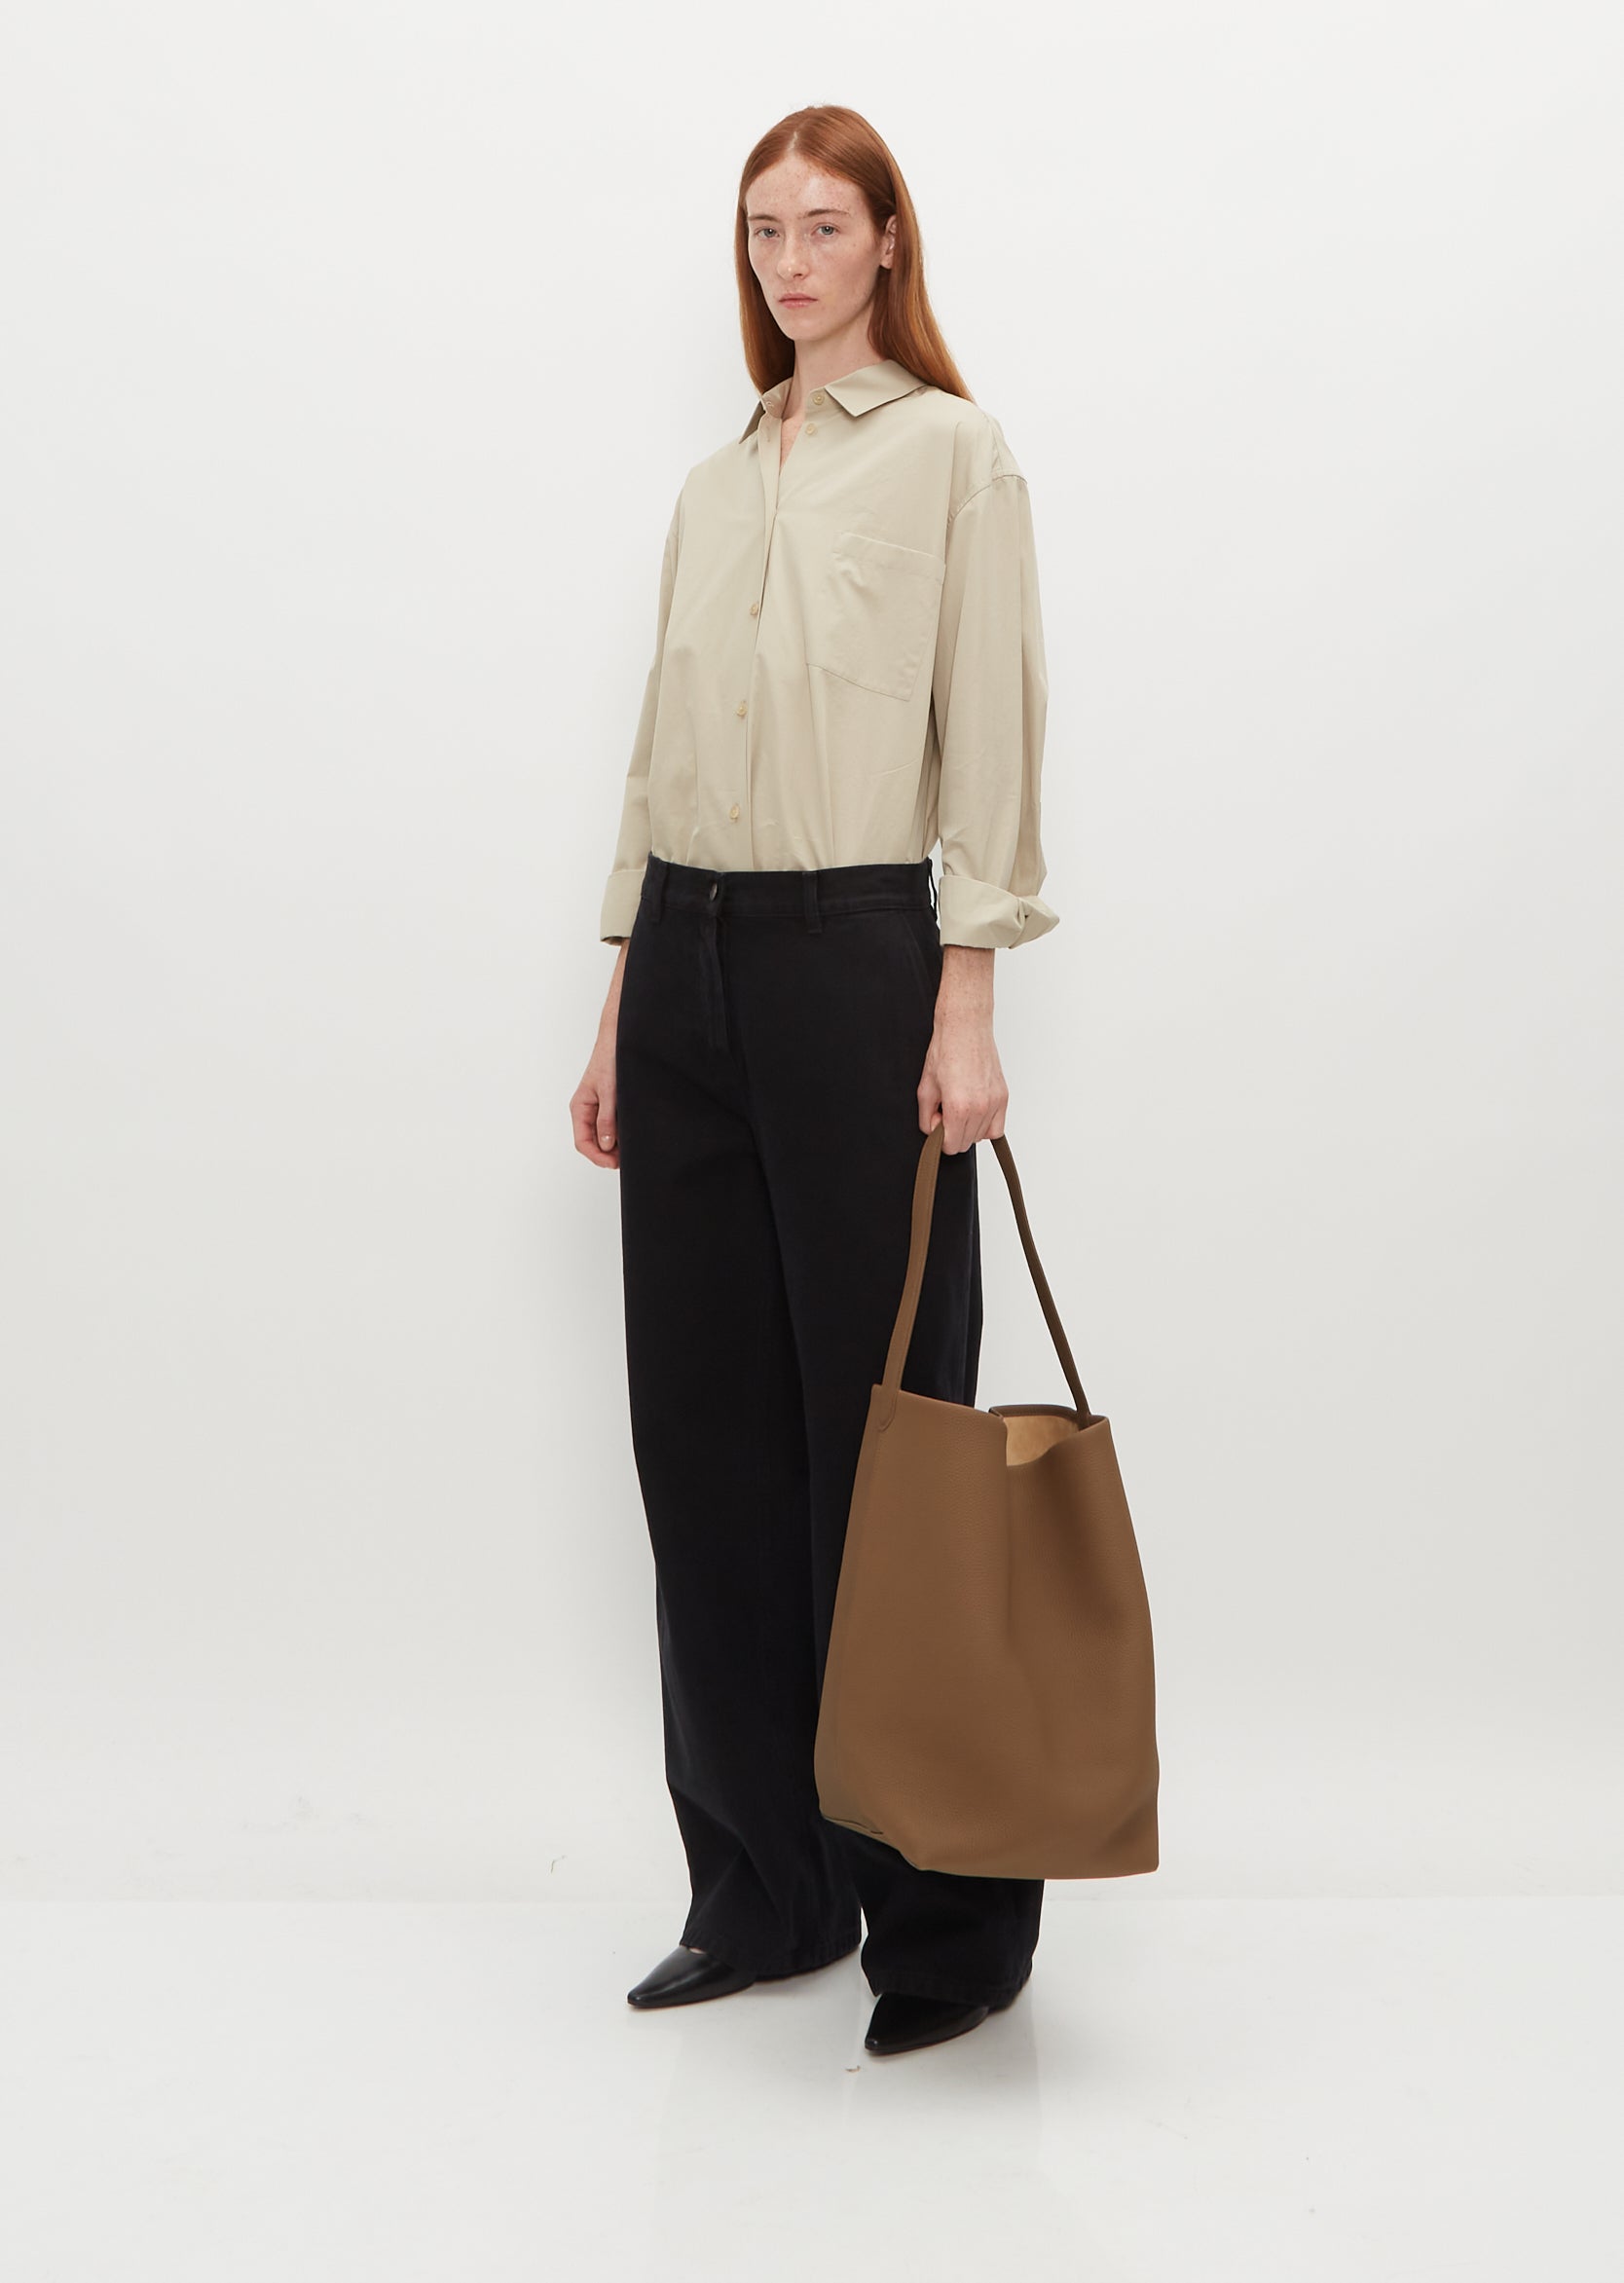 Leather Shopper in Taupe Large Handbag Leather Shoulder Bag 